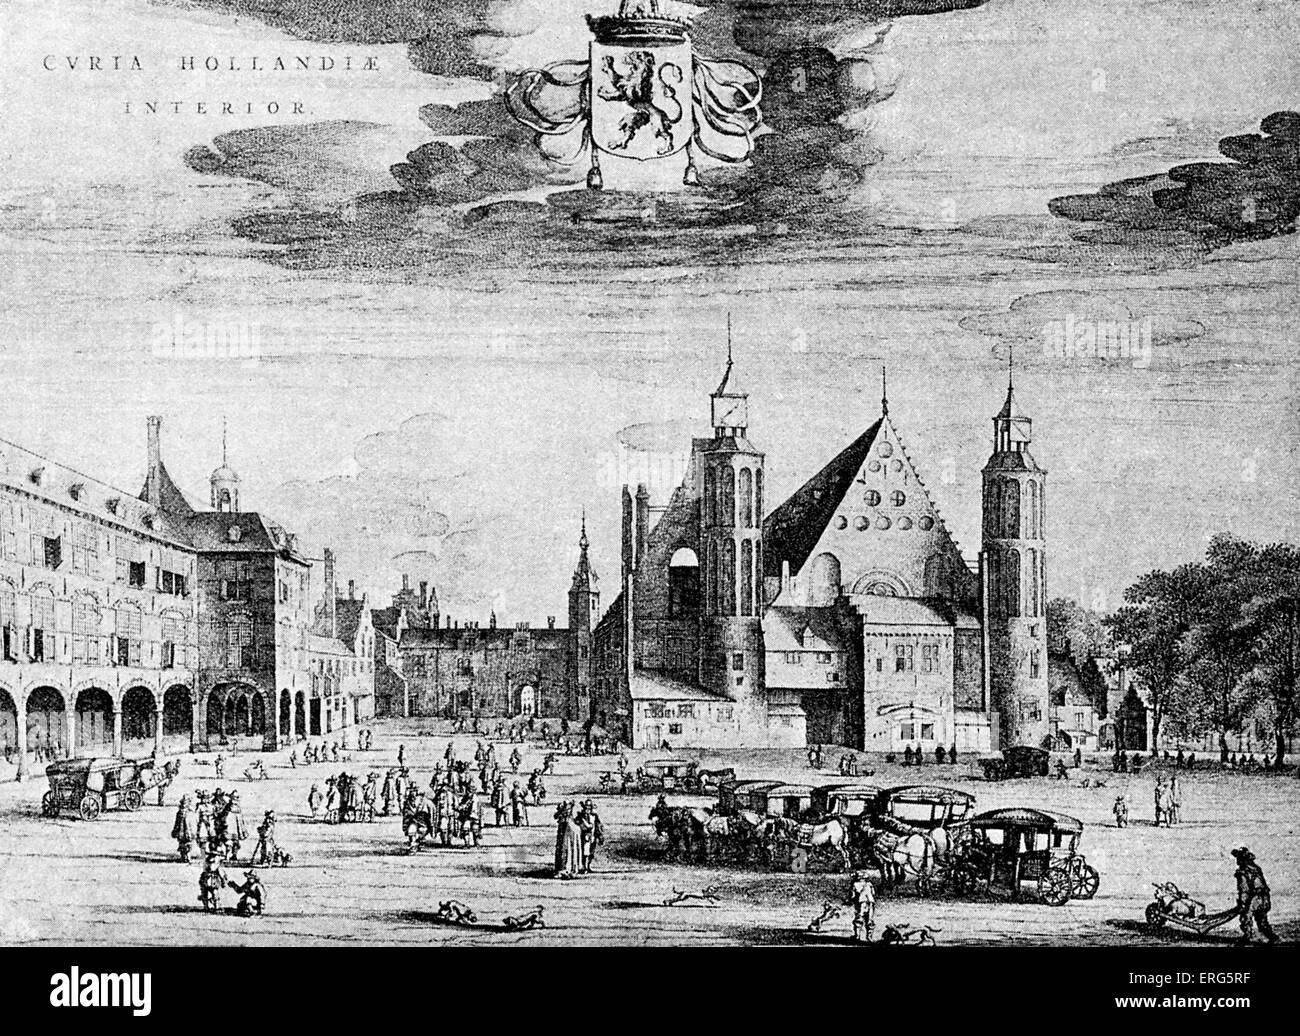 Cour intérieure du palais de la Haye, Hollande. Gravure hollandaise faite à l'époque de Guillaume III. Prince souverain de l'Orange et Banque D'Images